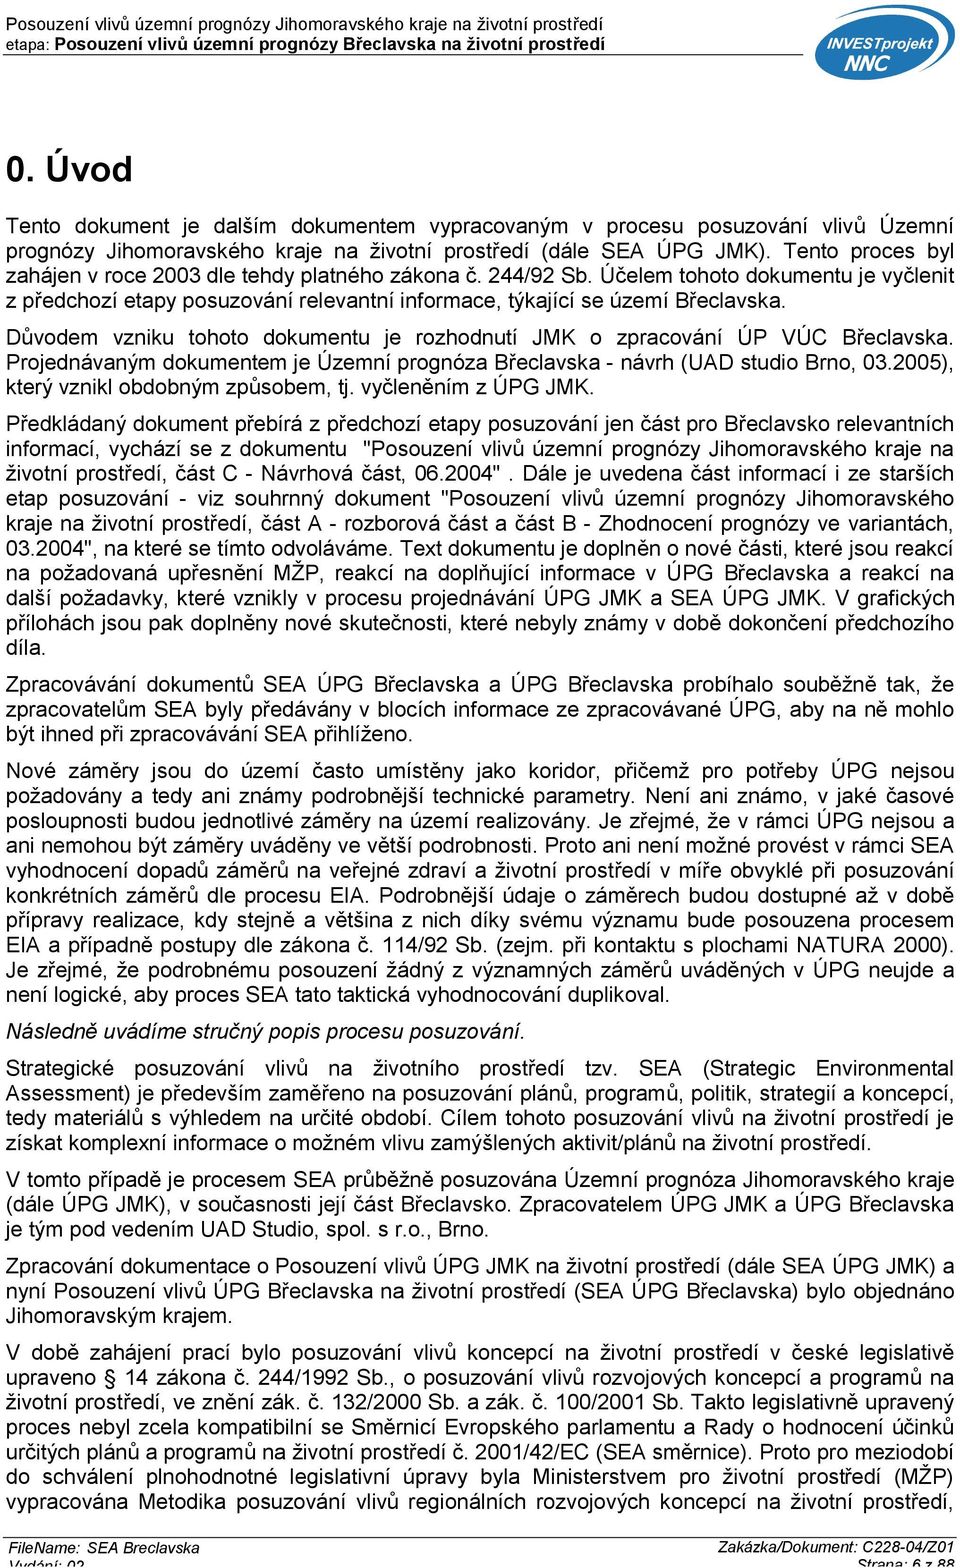 Důvodem vzniku tohoto dokumentu je rozhodnutí JMK o zpracování ÚP VÚC Břeclavska. Projednávaným dokumentem je Územní prognóza Břeclavska - návrh (UAD studio Brno, 03.